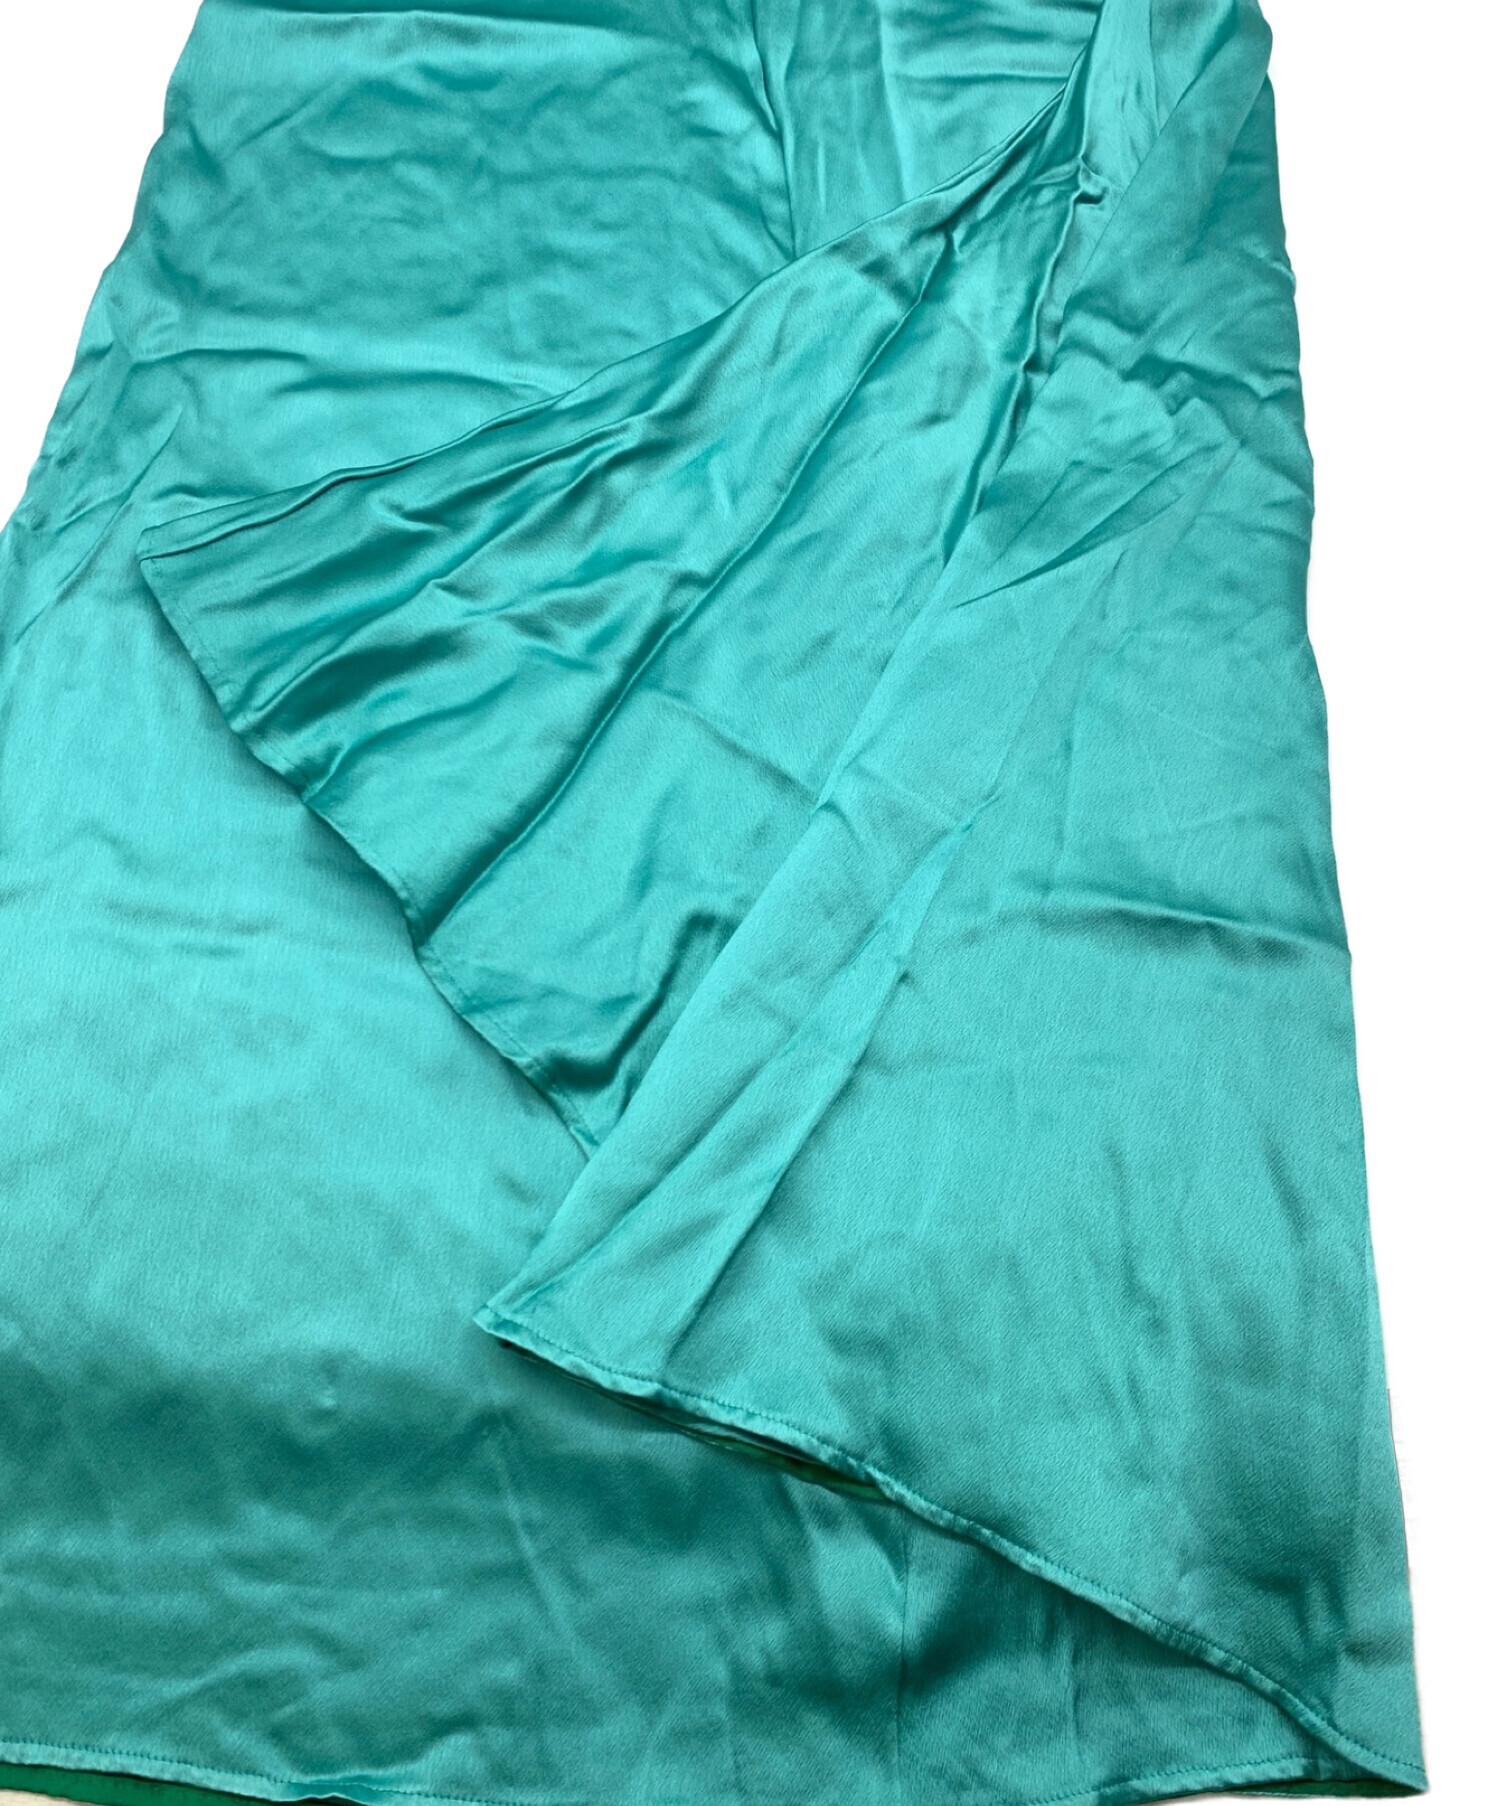 BLAMINK (ブラミンク) レーヨンロングスカート グリーン サイズ:38